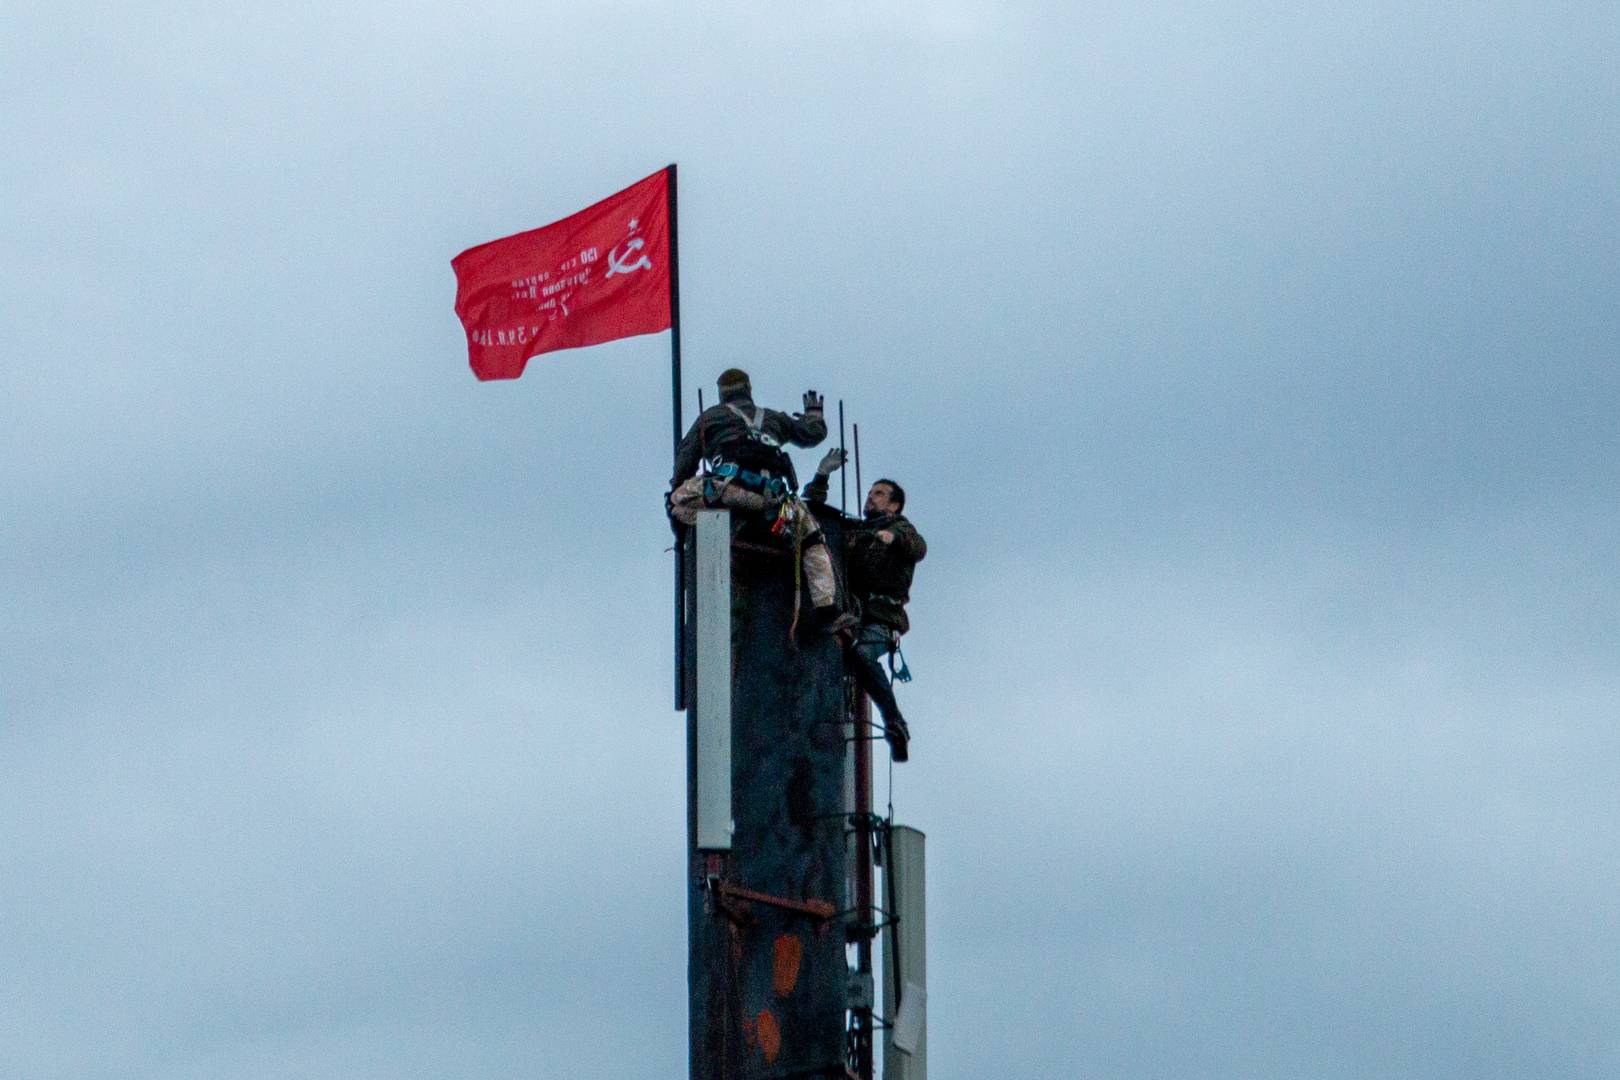 Члены Александровской коммуны «Сути времени» устанавливают копию Знамени Победы на фабричной трубе в честь 75-летия Победы. 9 мая 2020 г.